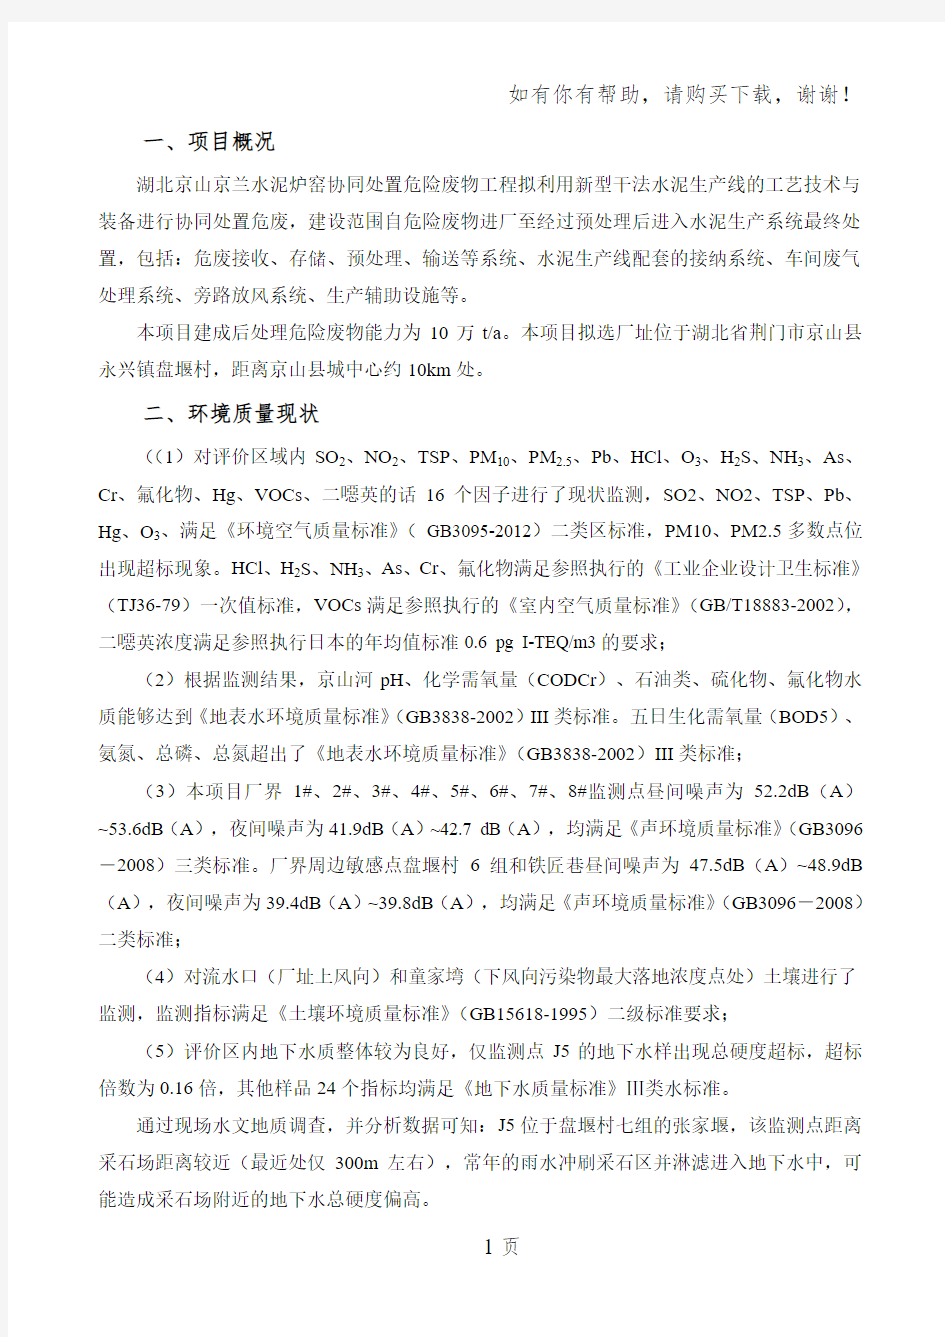 湖北京兰环保科技有限公司水泥炉窑协同处置危险废物工程